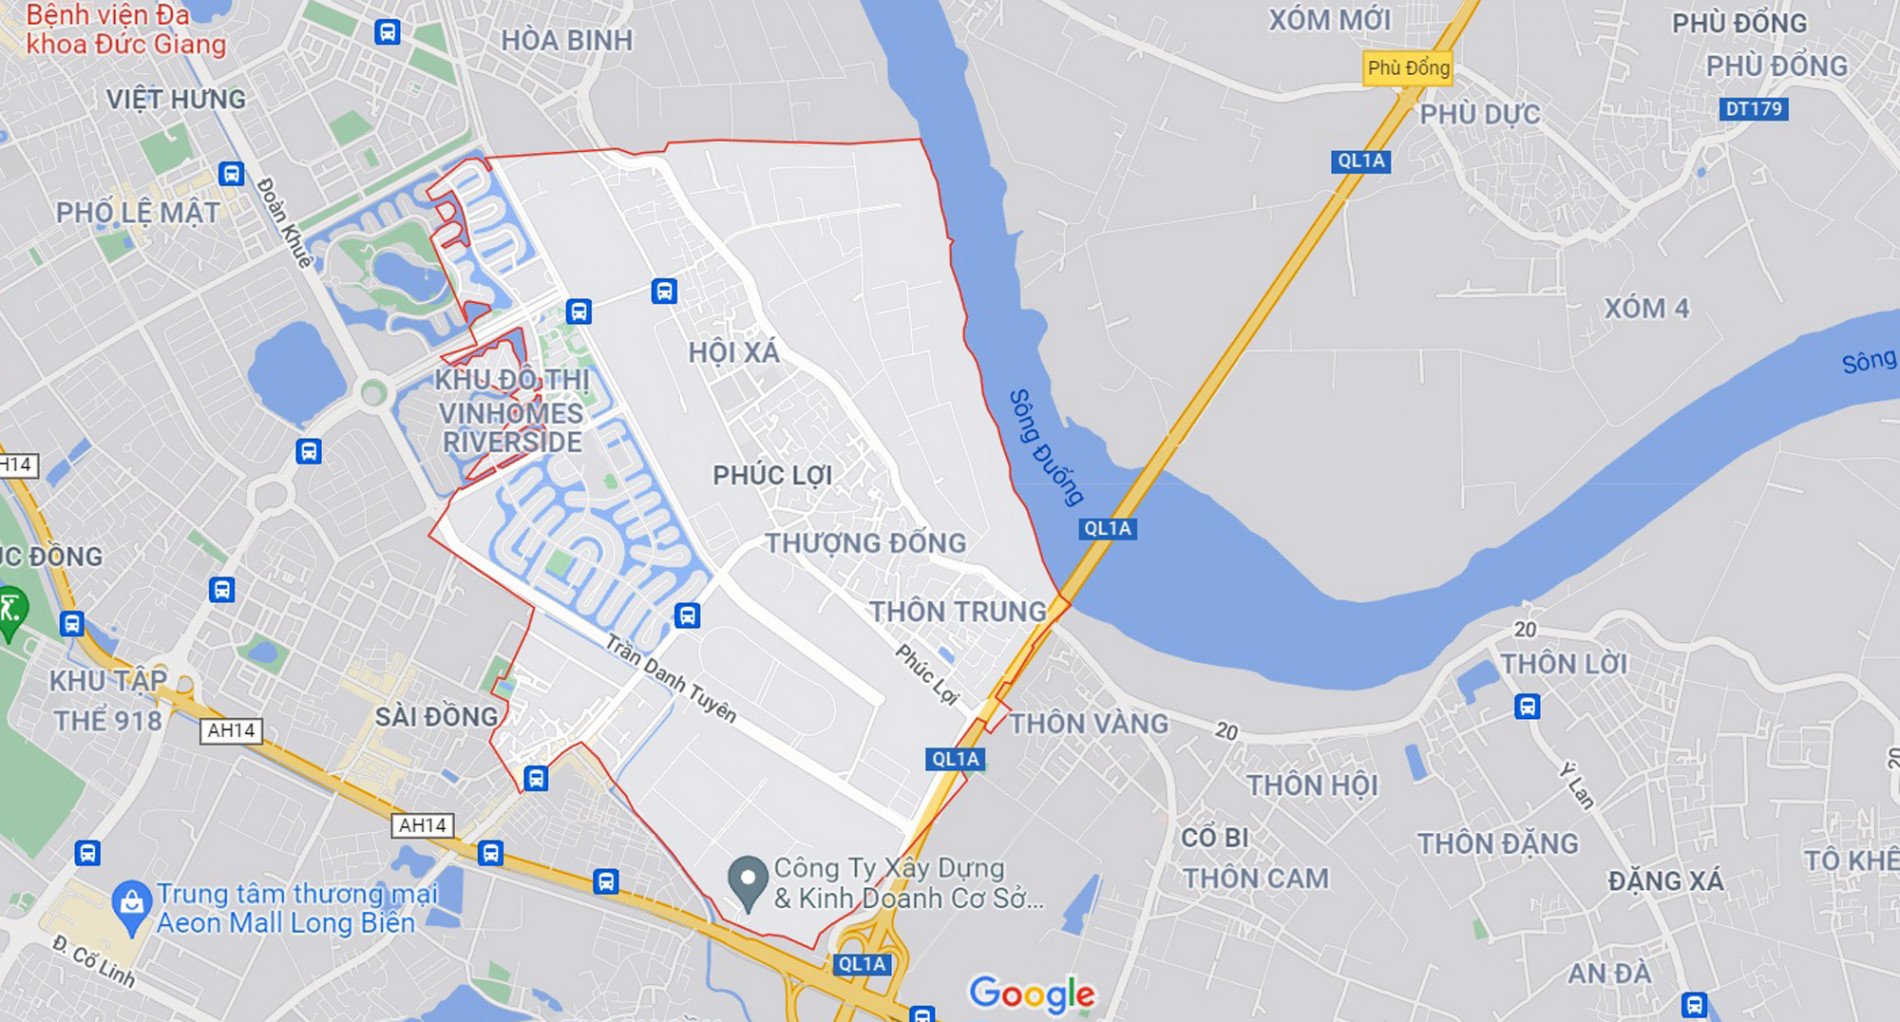 Những khu đất sắp thu hồi để mở đường ở phường Phúc Lợi, Long Biên, Hà Nội (phần 7) - Ảnh 1.